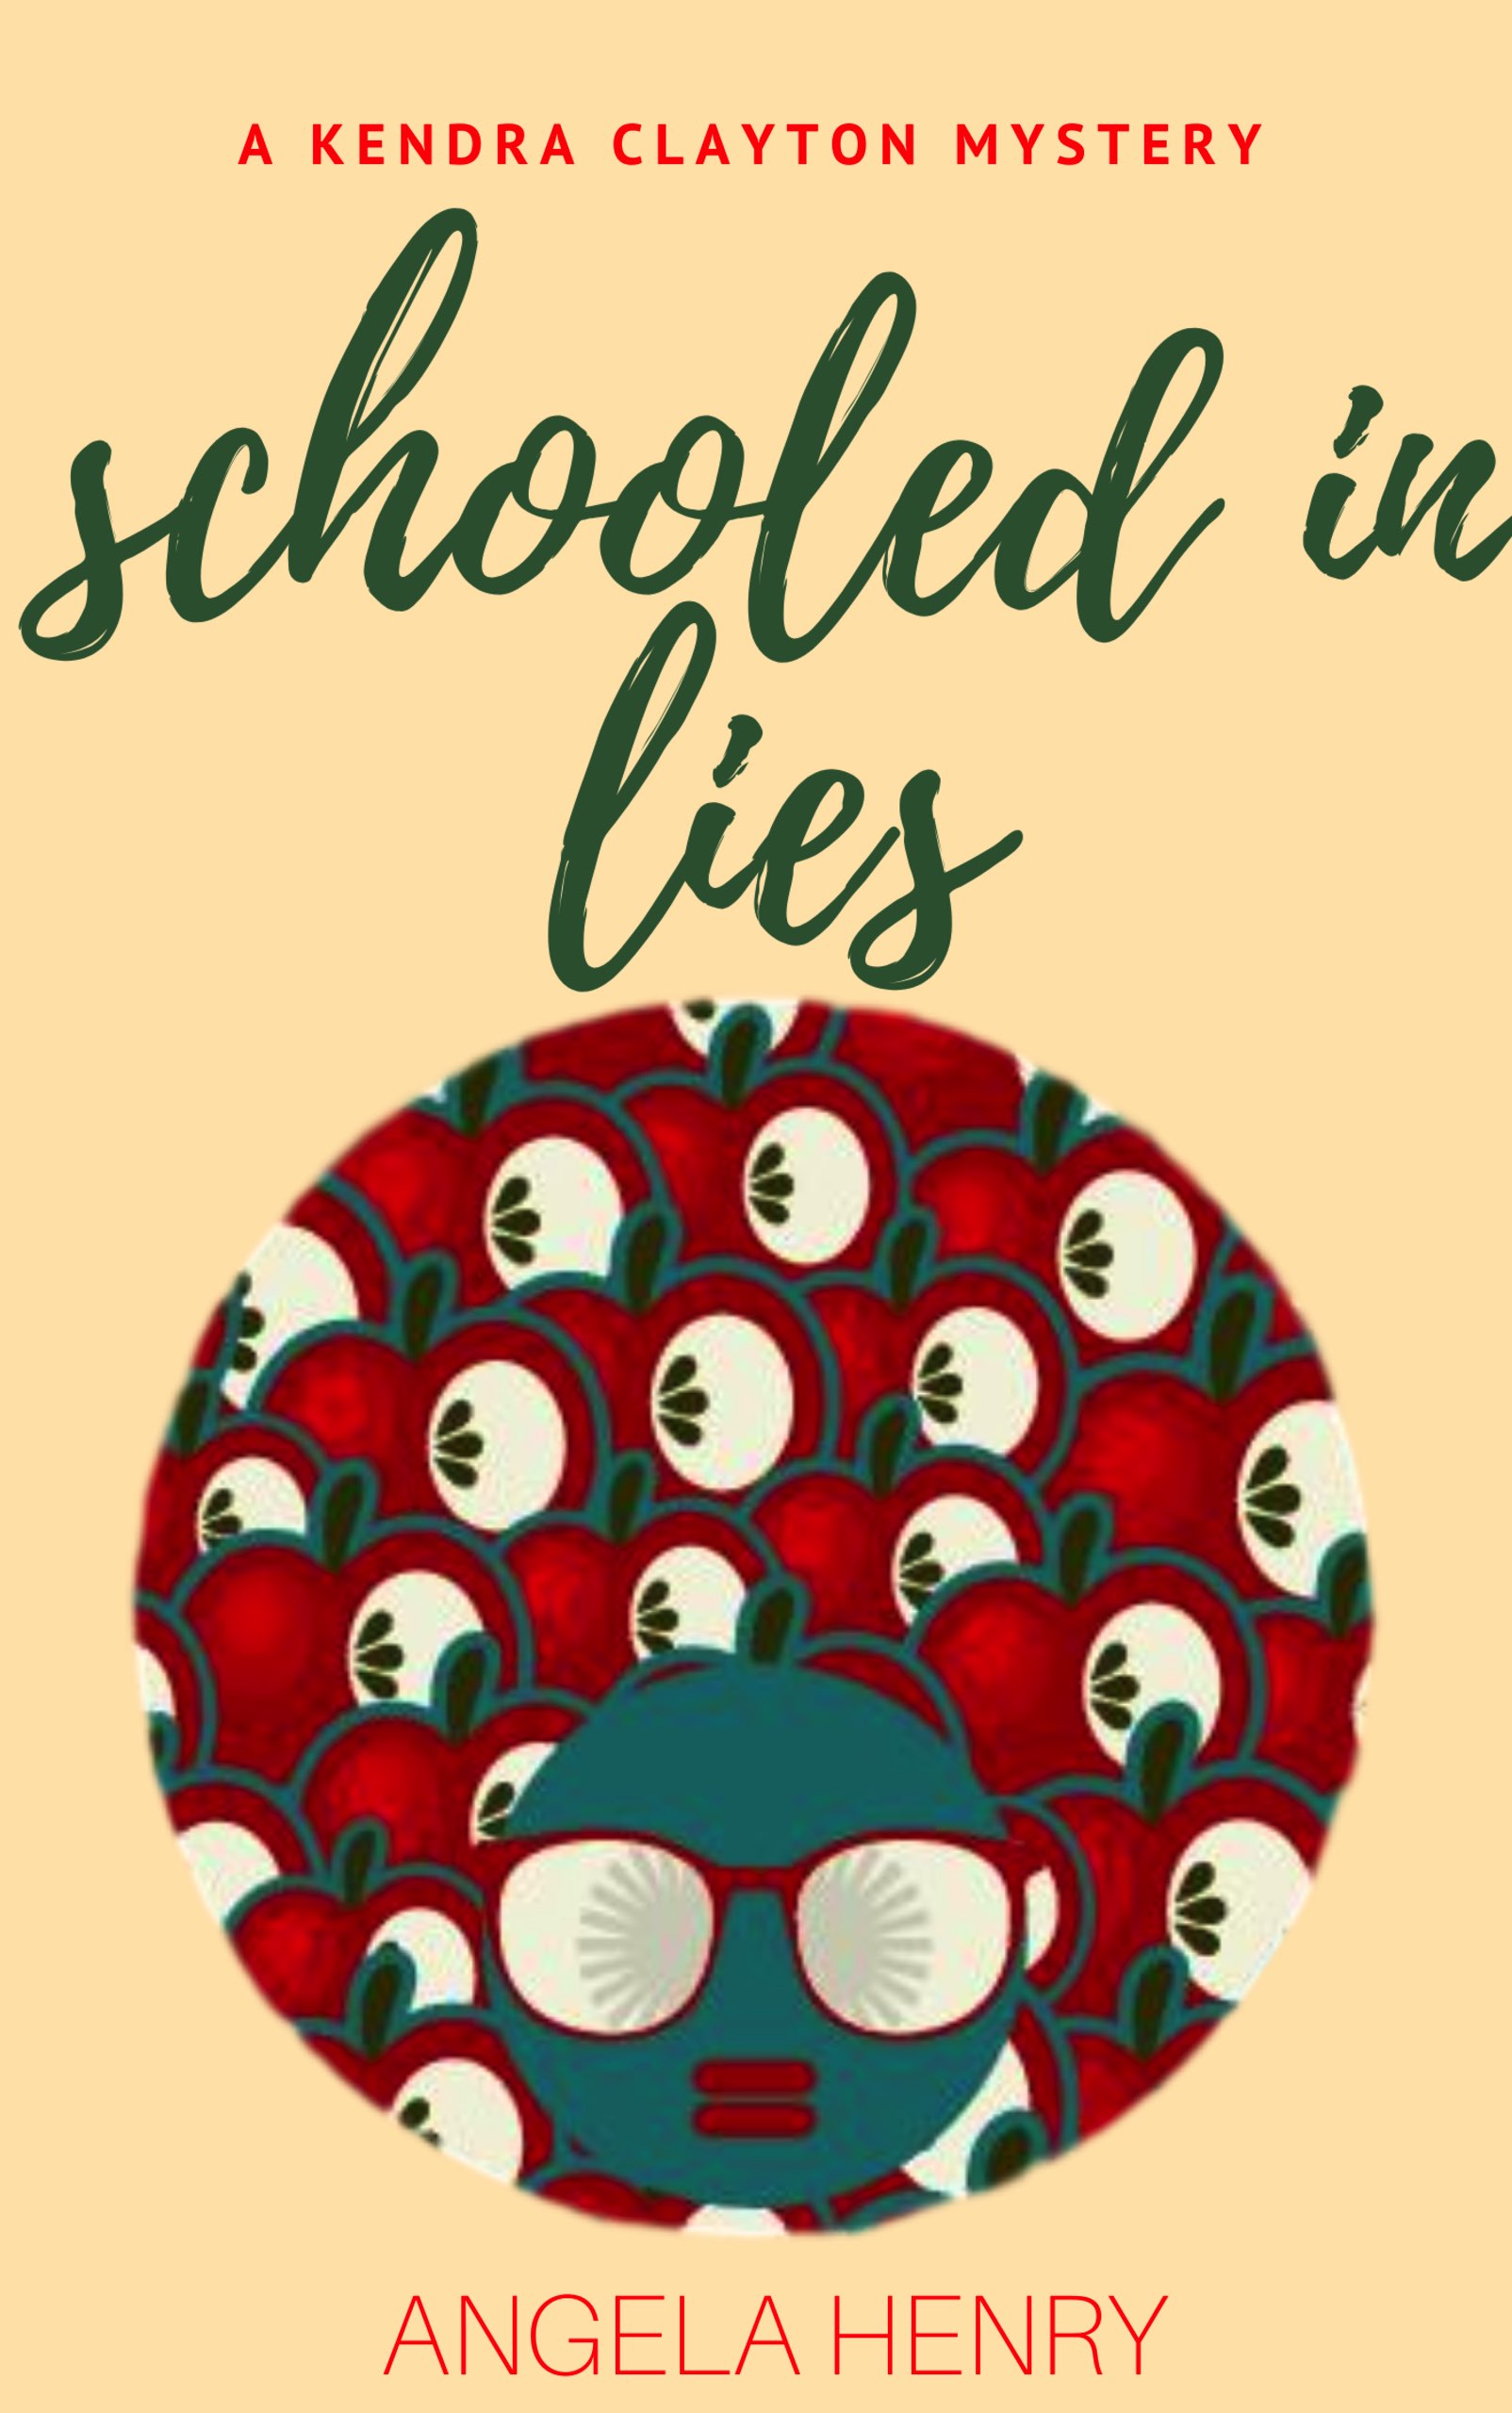 schooled in lies